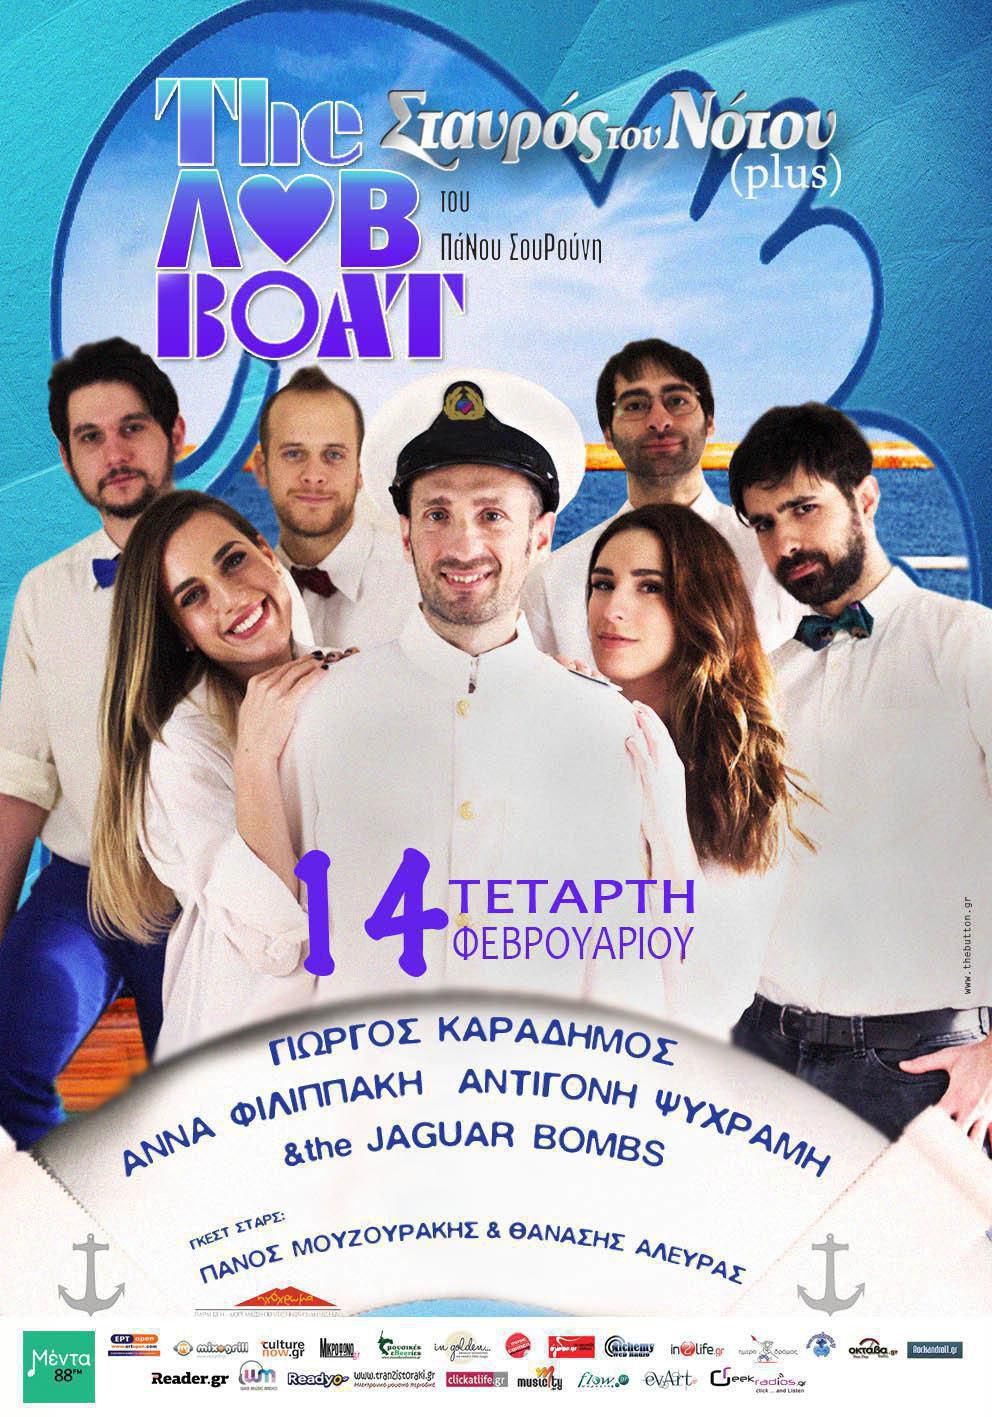 loveboat final guest